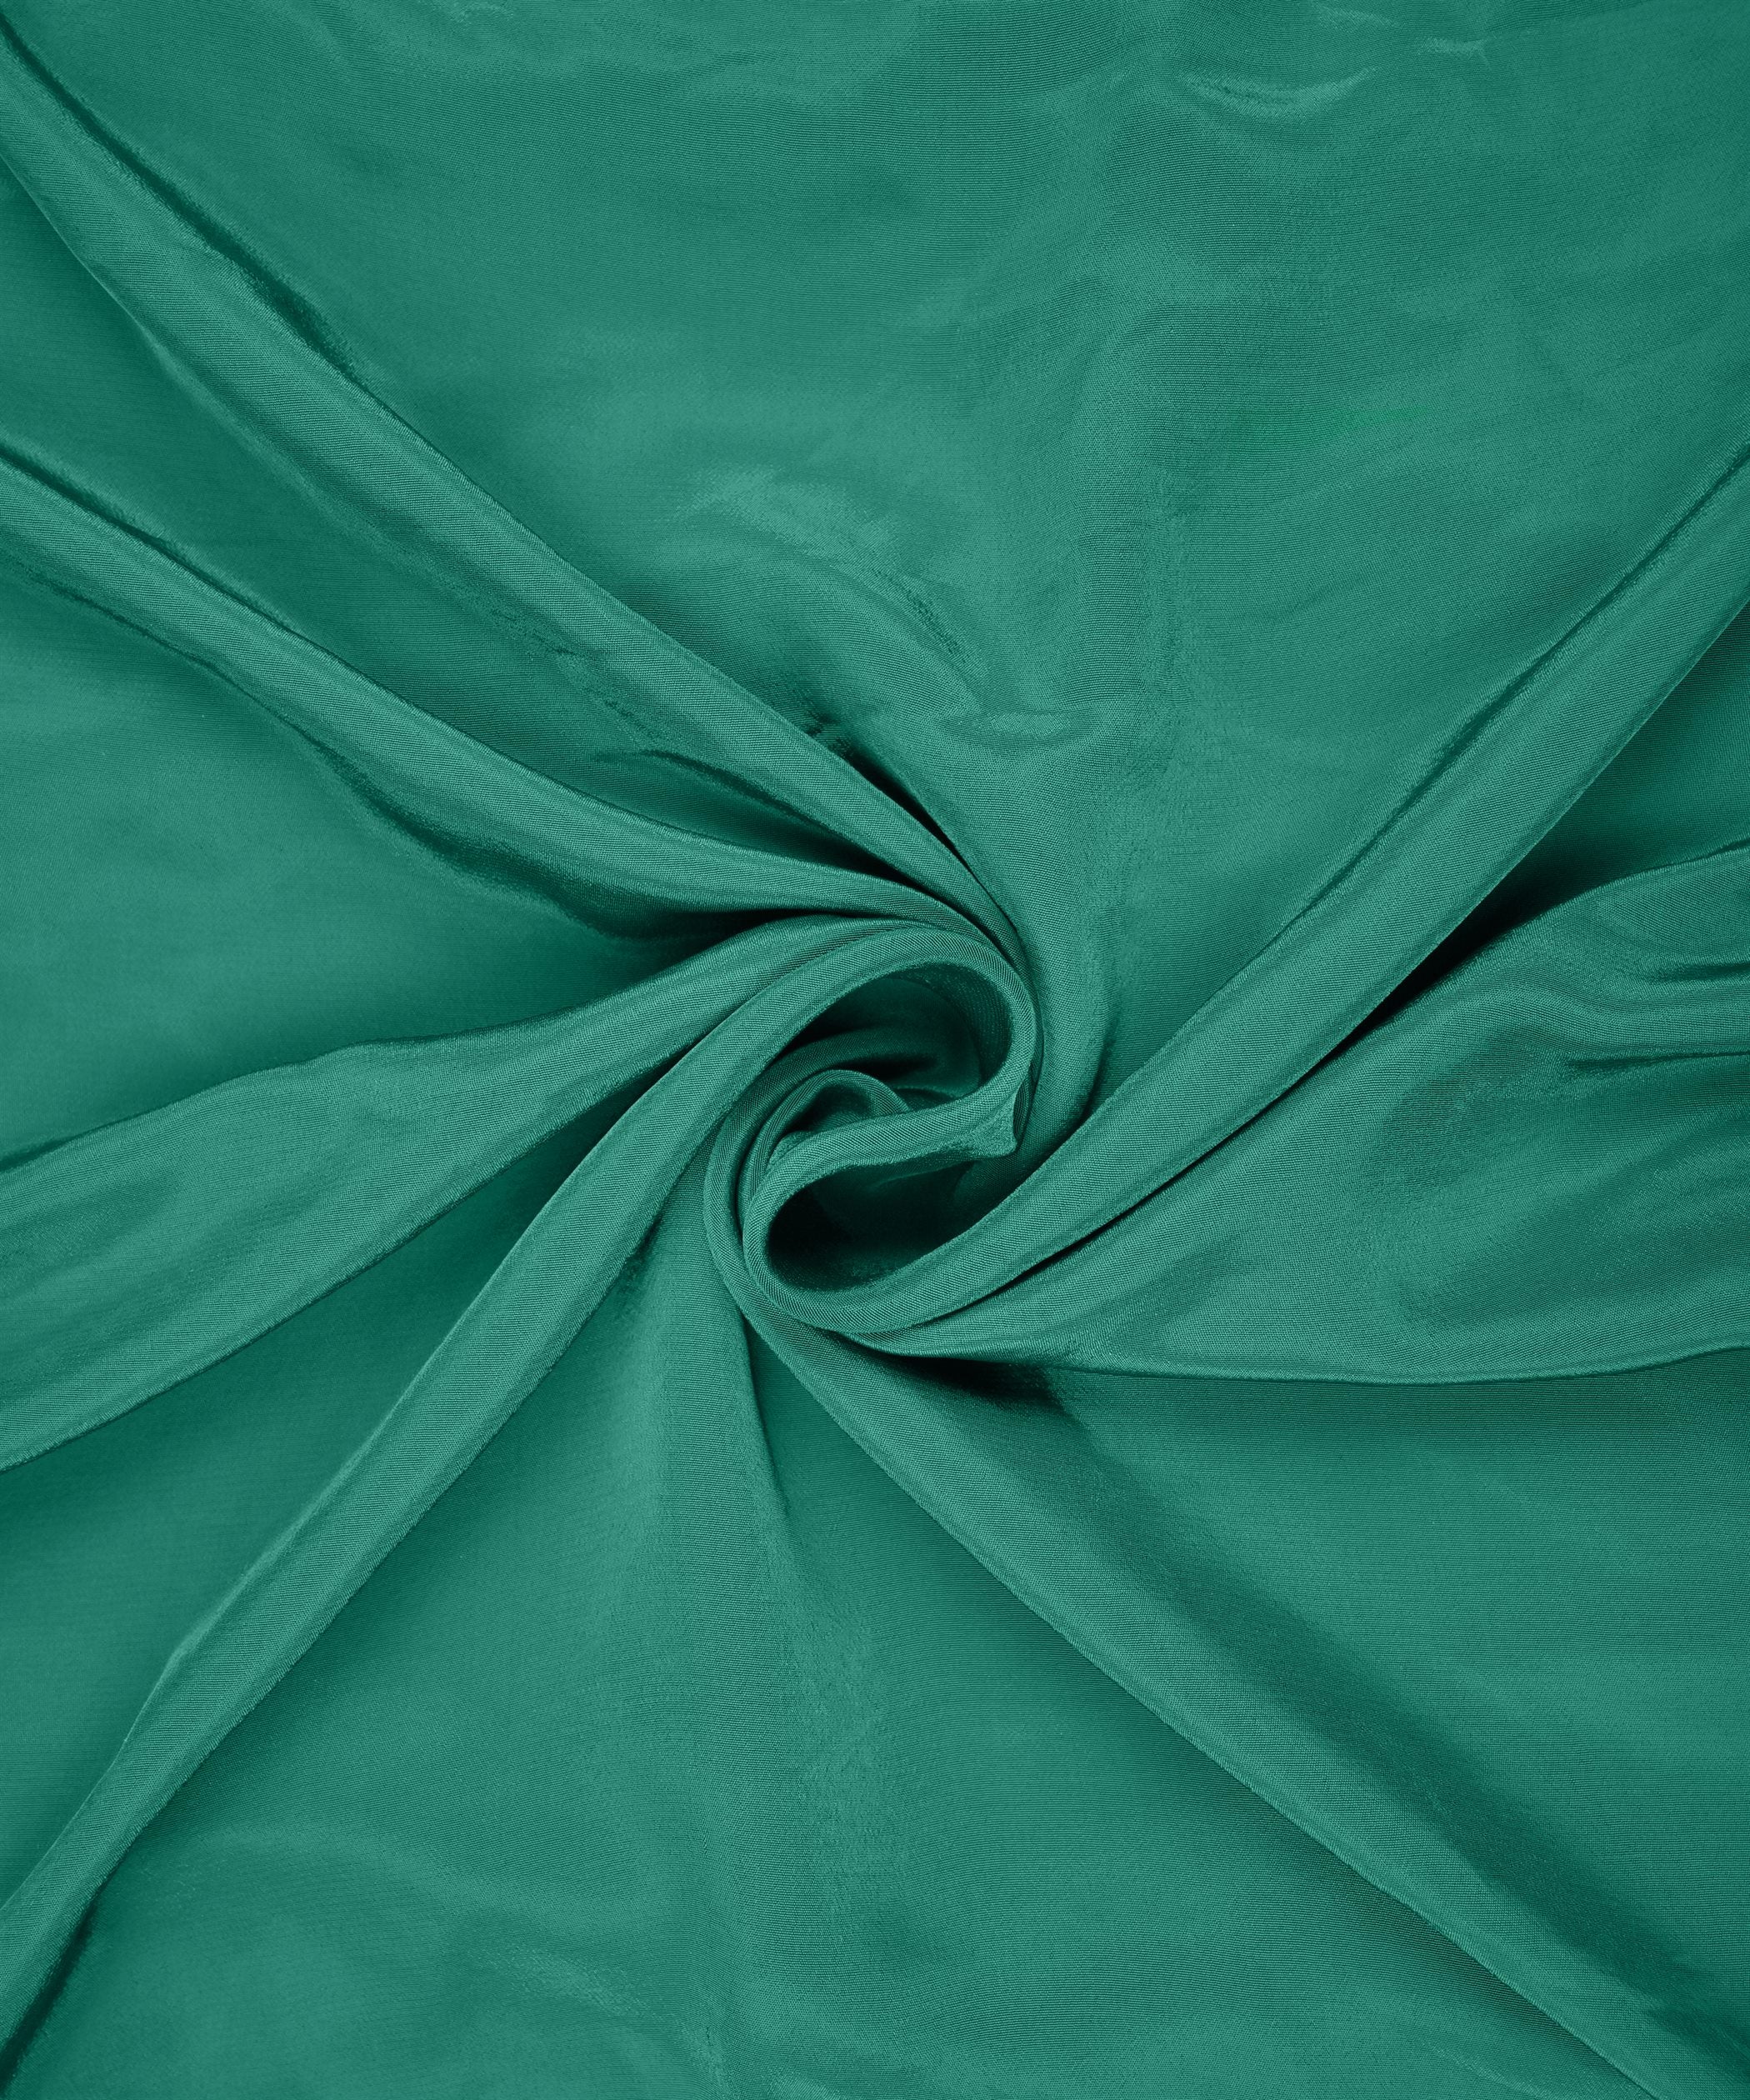 Aqua Green Plain Dyed American Crepe Fabric